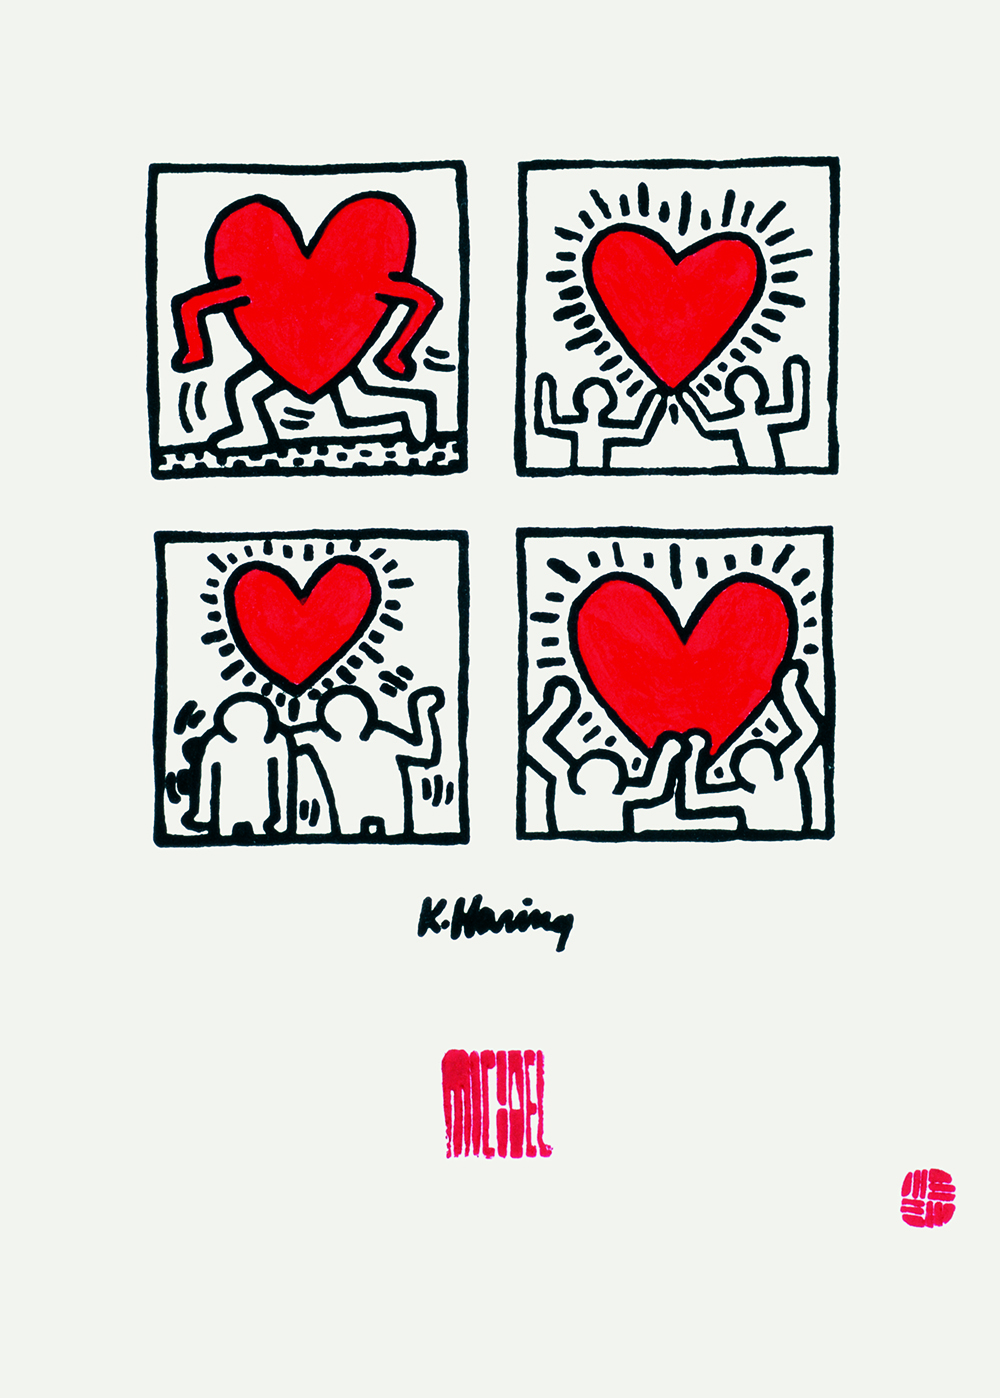 작품사진:키스 헤링과 전각이 만나다 Collaboration with Keith Haring